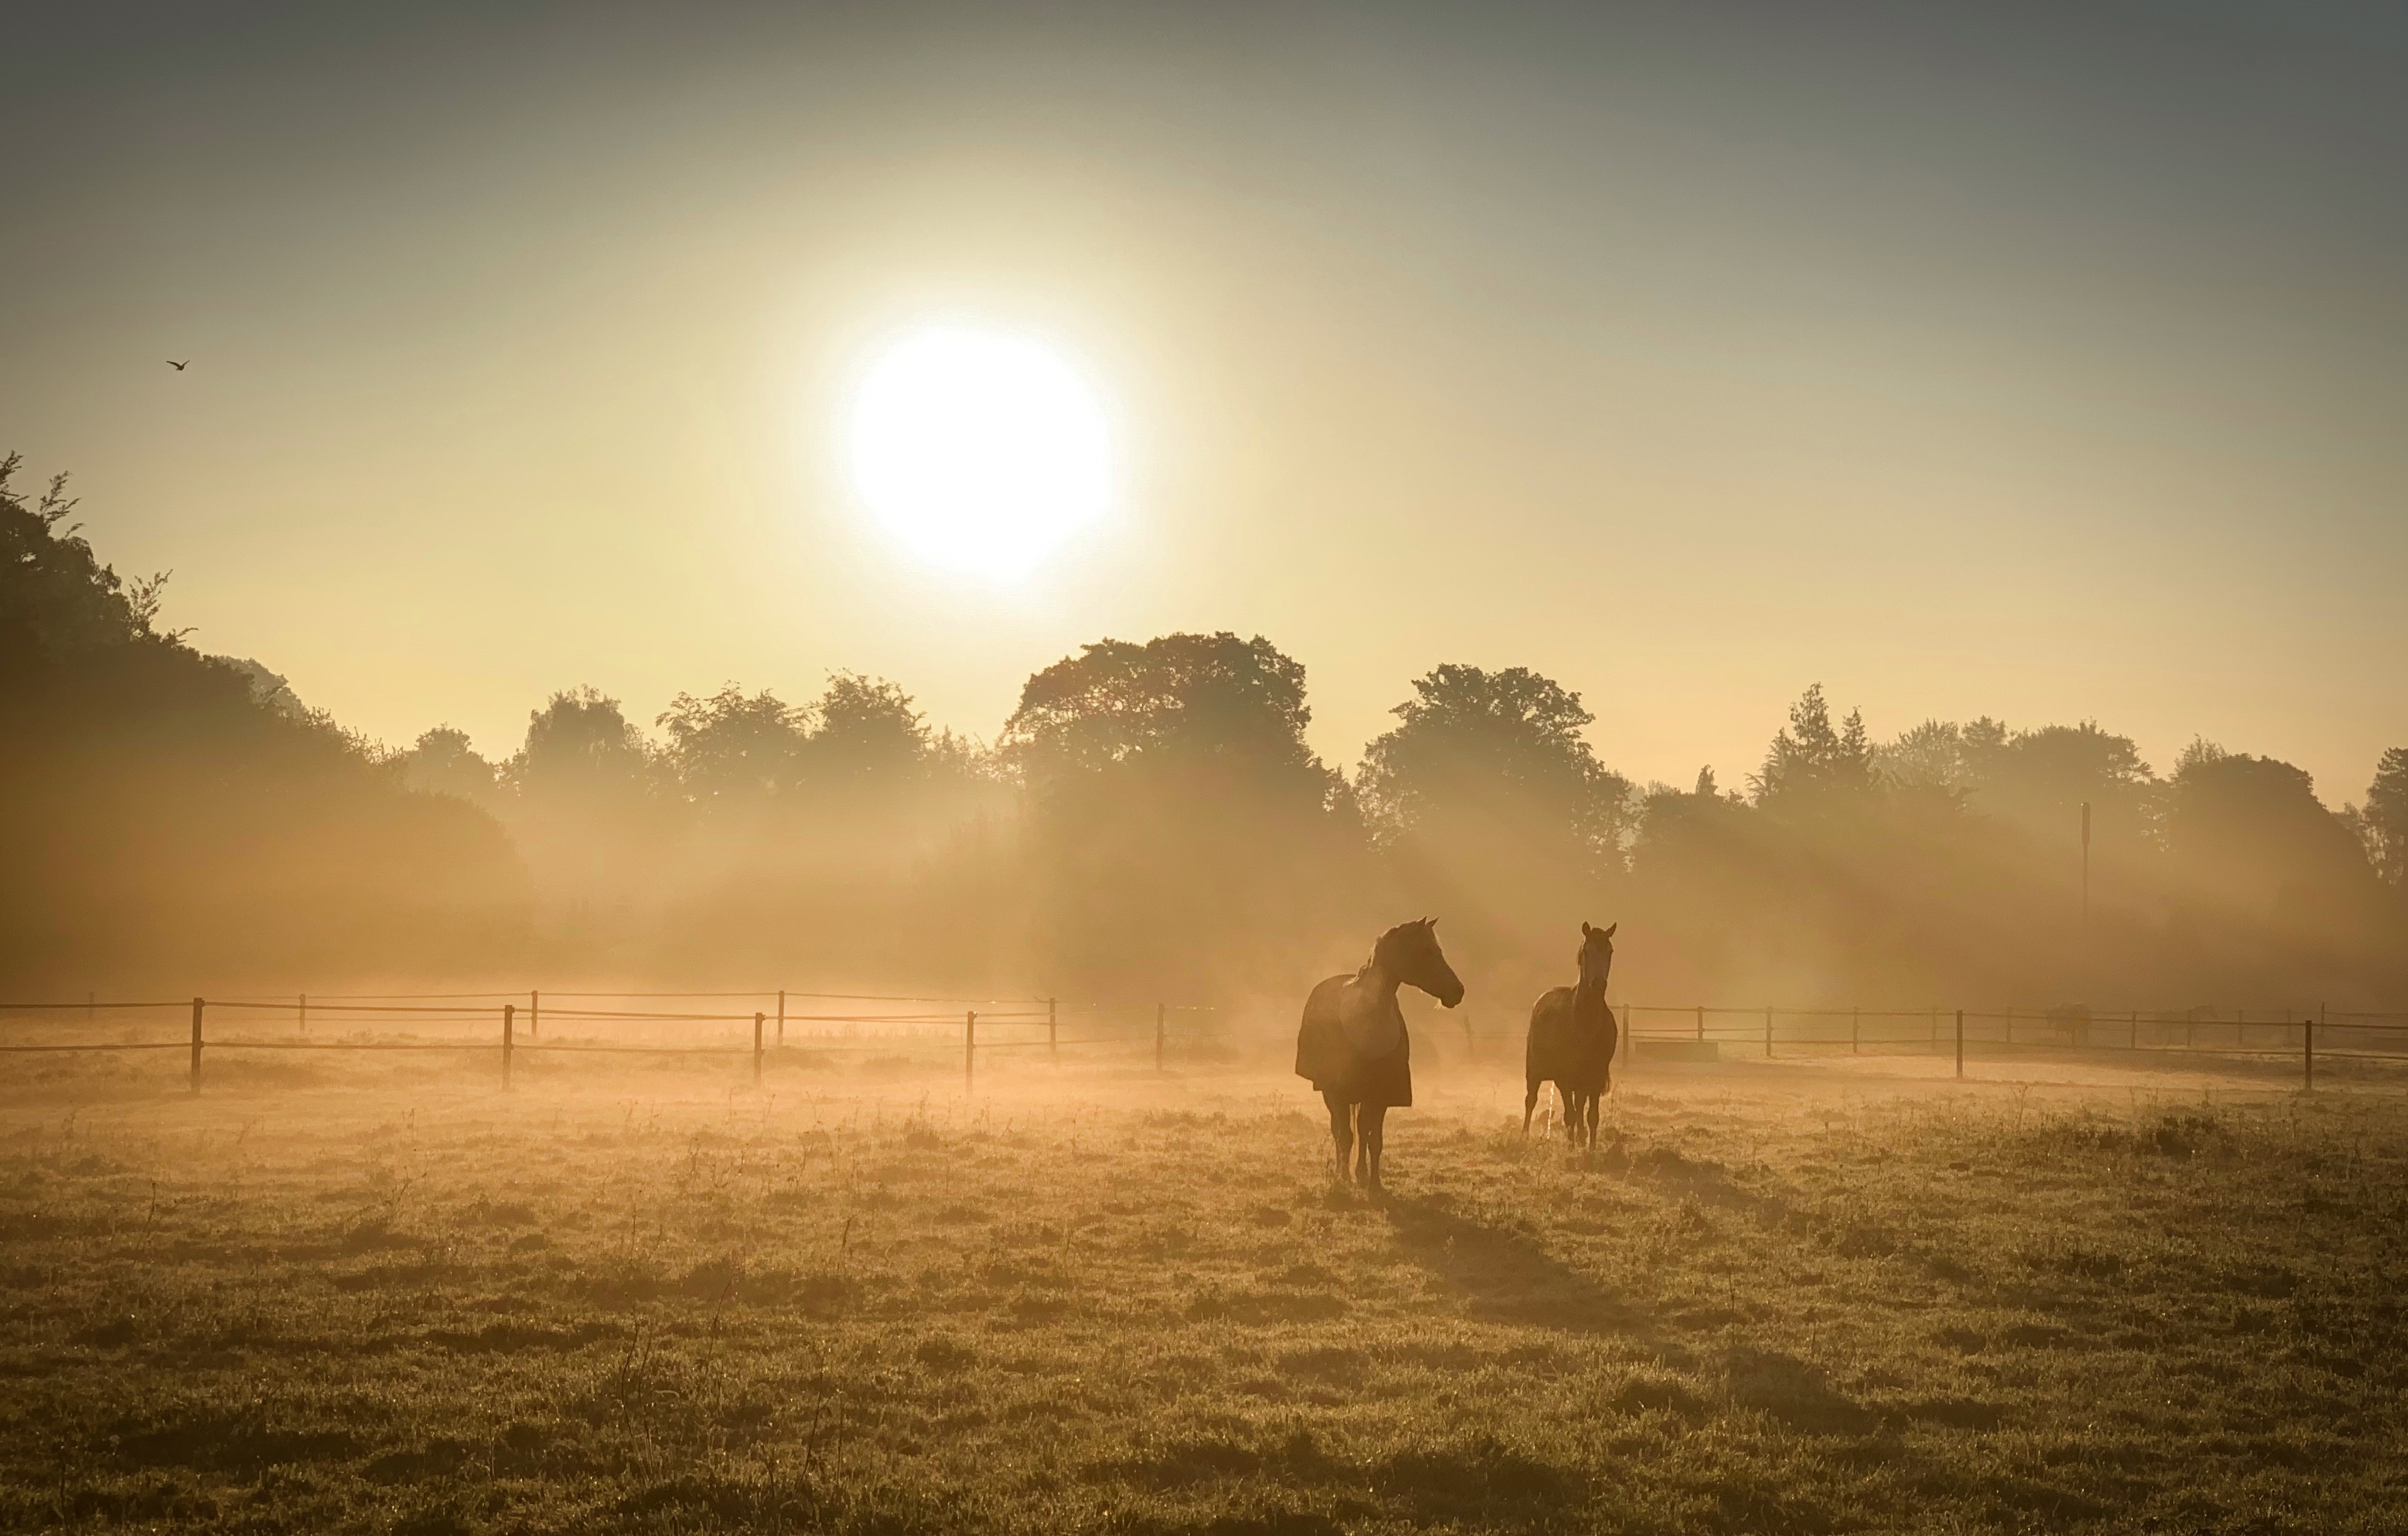 Day 132.3 – Horses at dawn